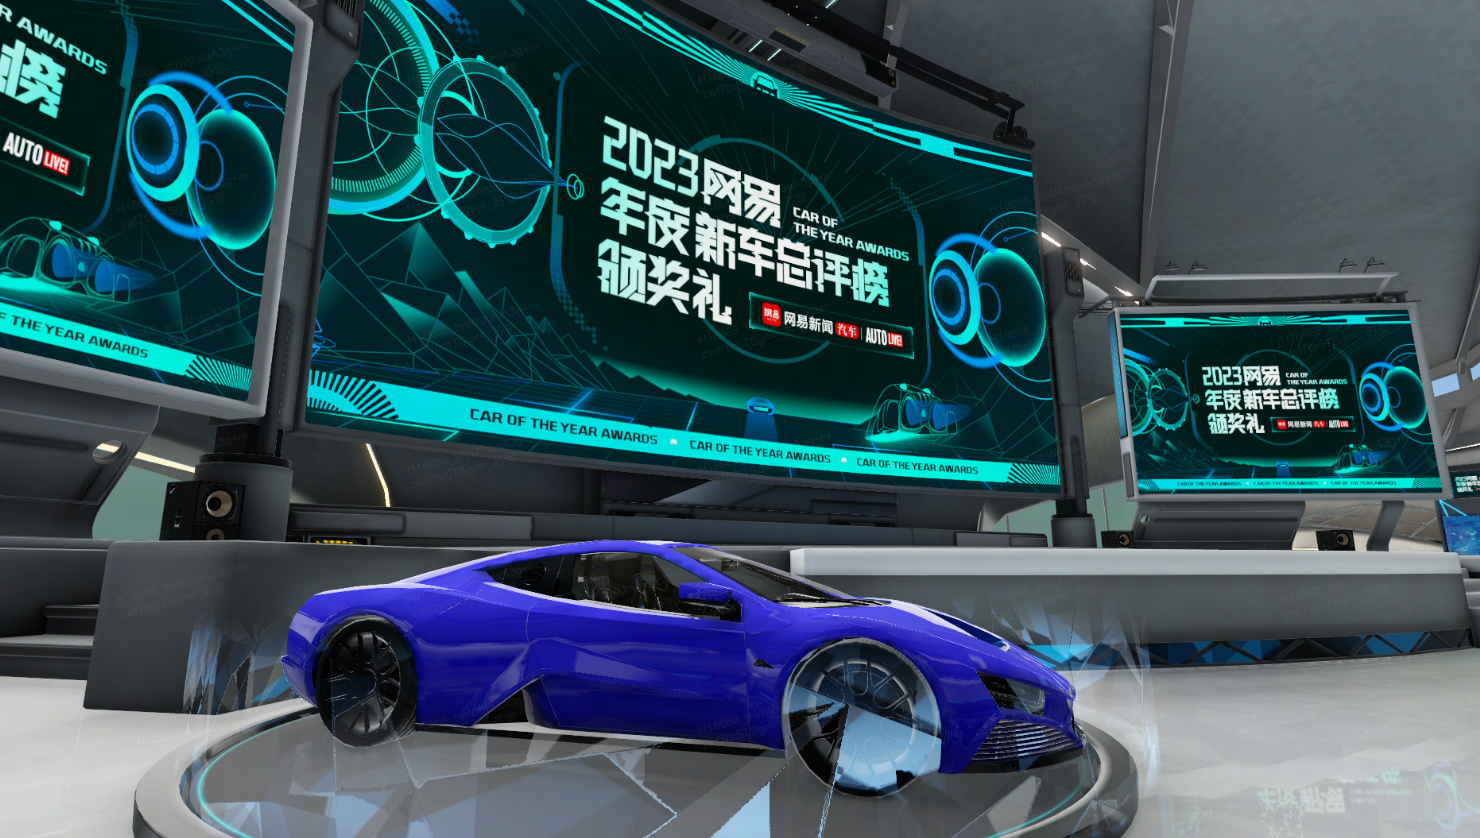 这是一张展示蓝色概念跑车的图片，车辆放置在带有未来科技风格的展示台上，背景有多个显示屏展示相关信息。